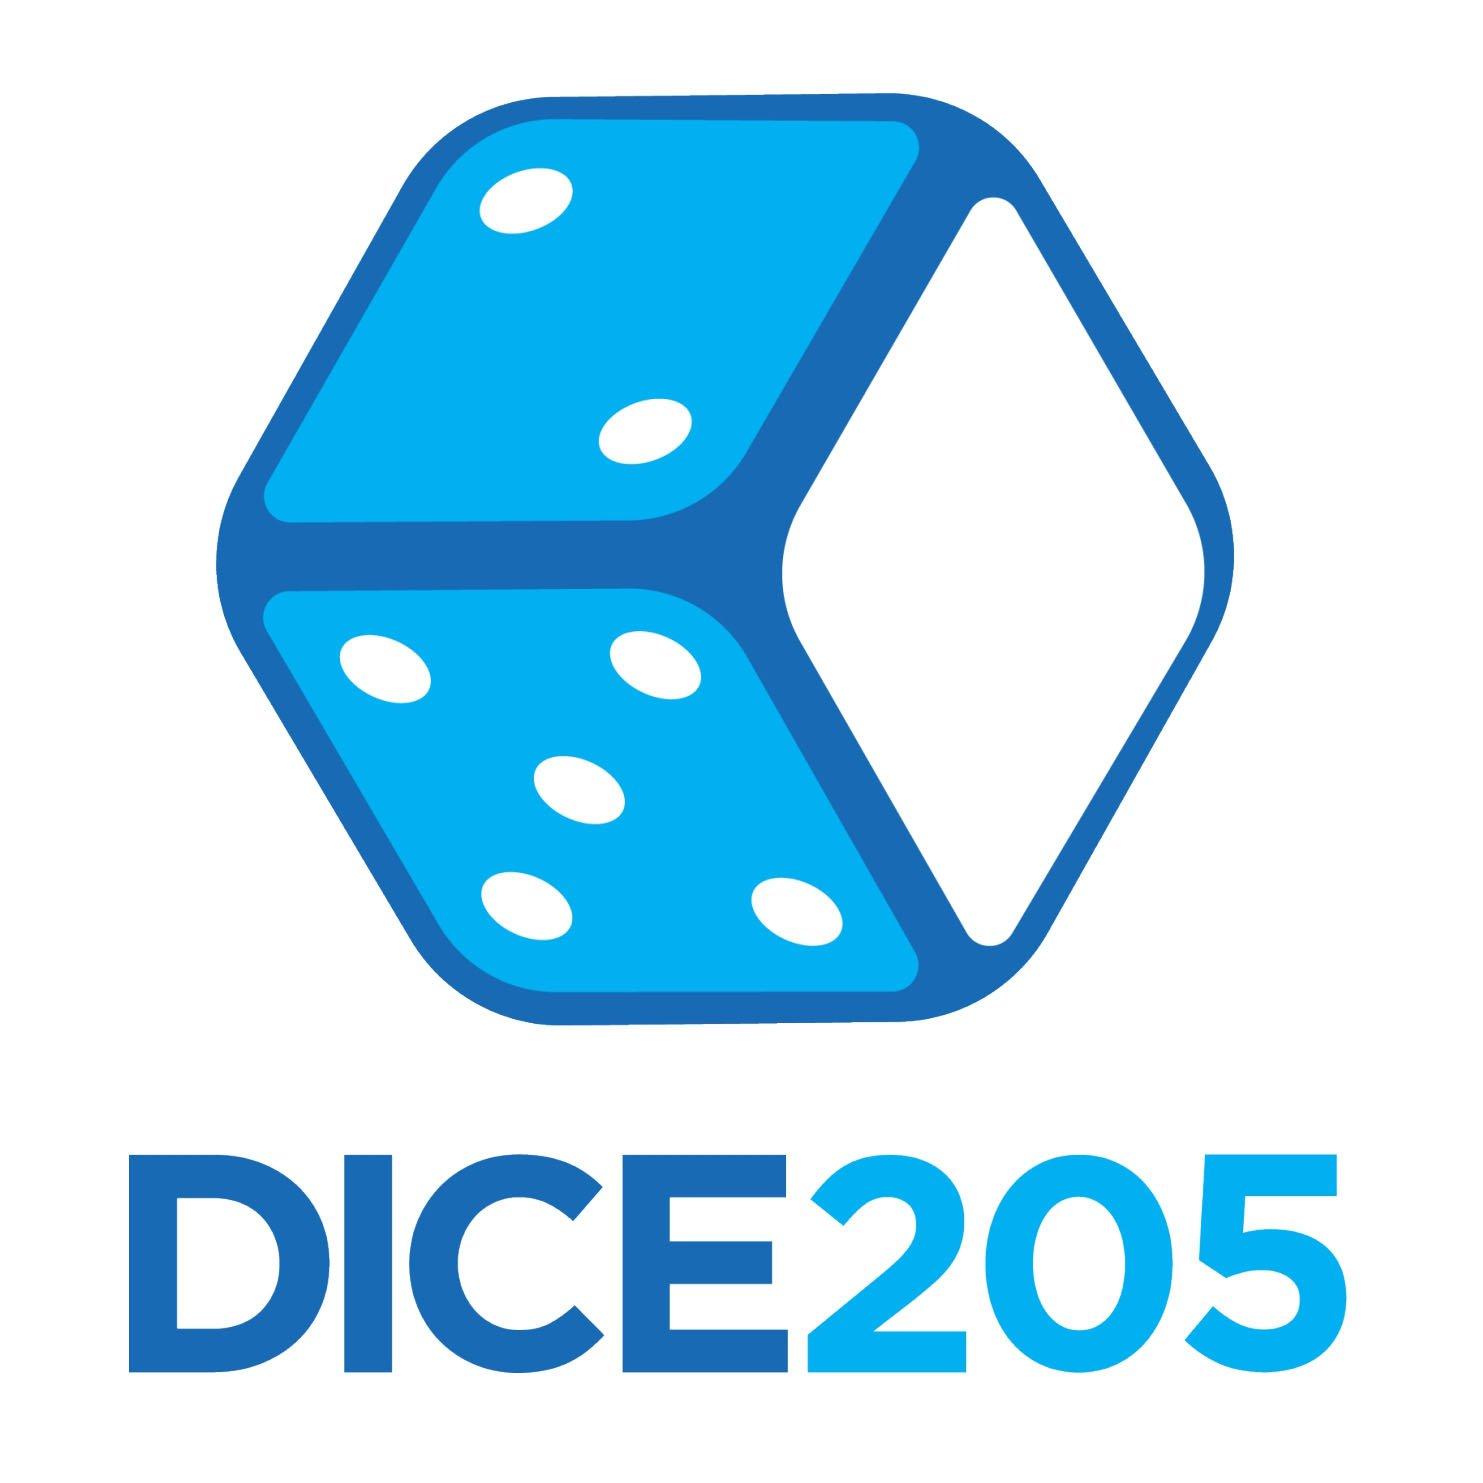 DICE205 Digital Corporation